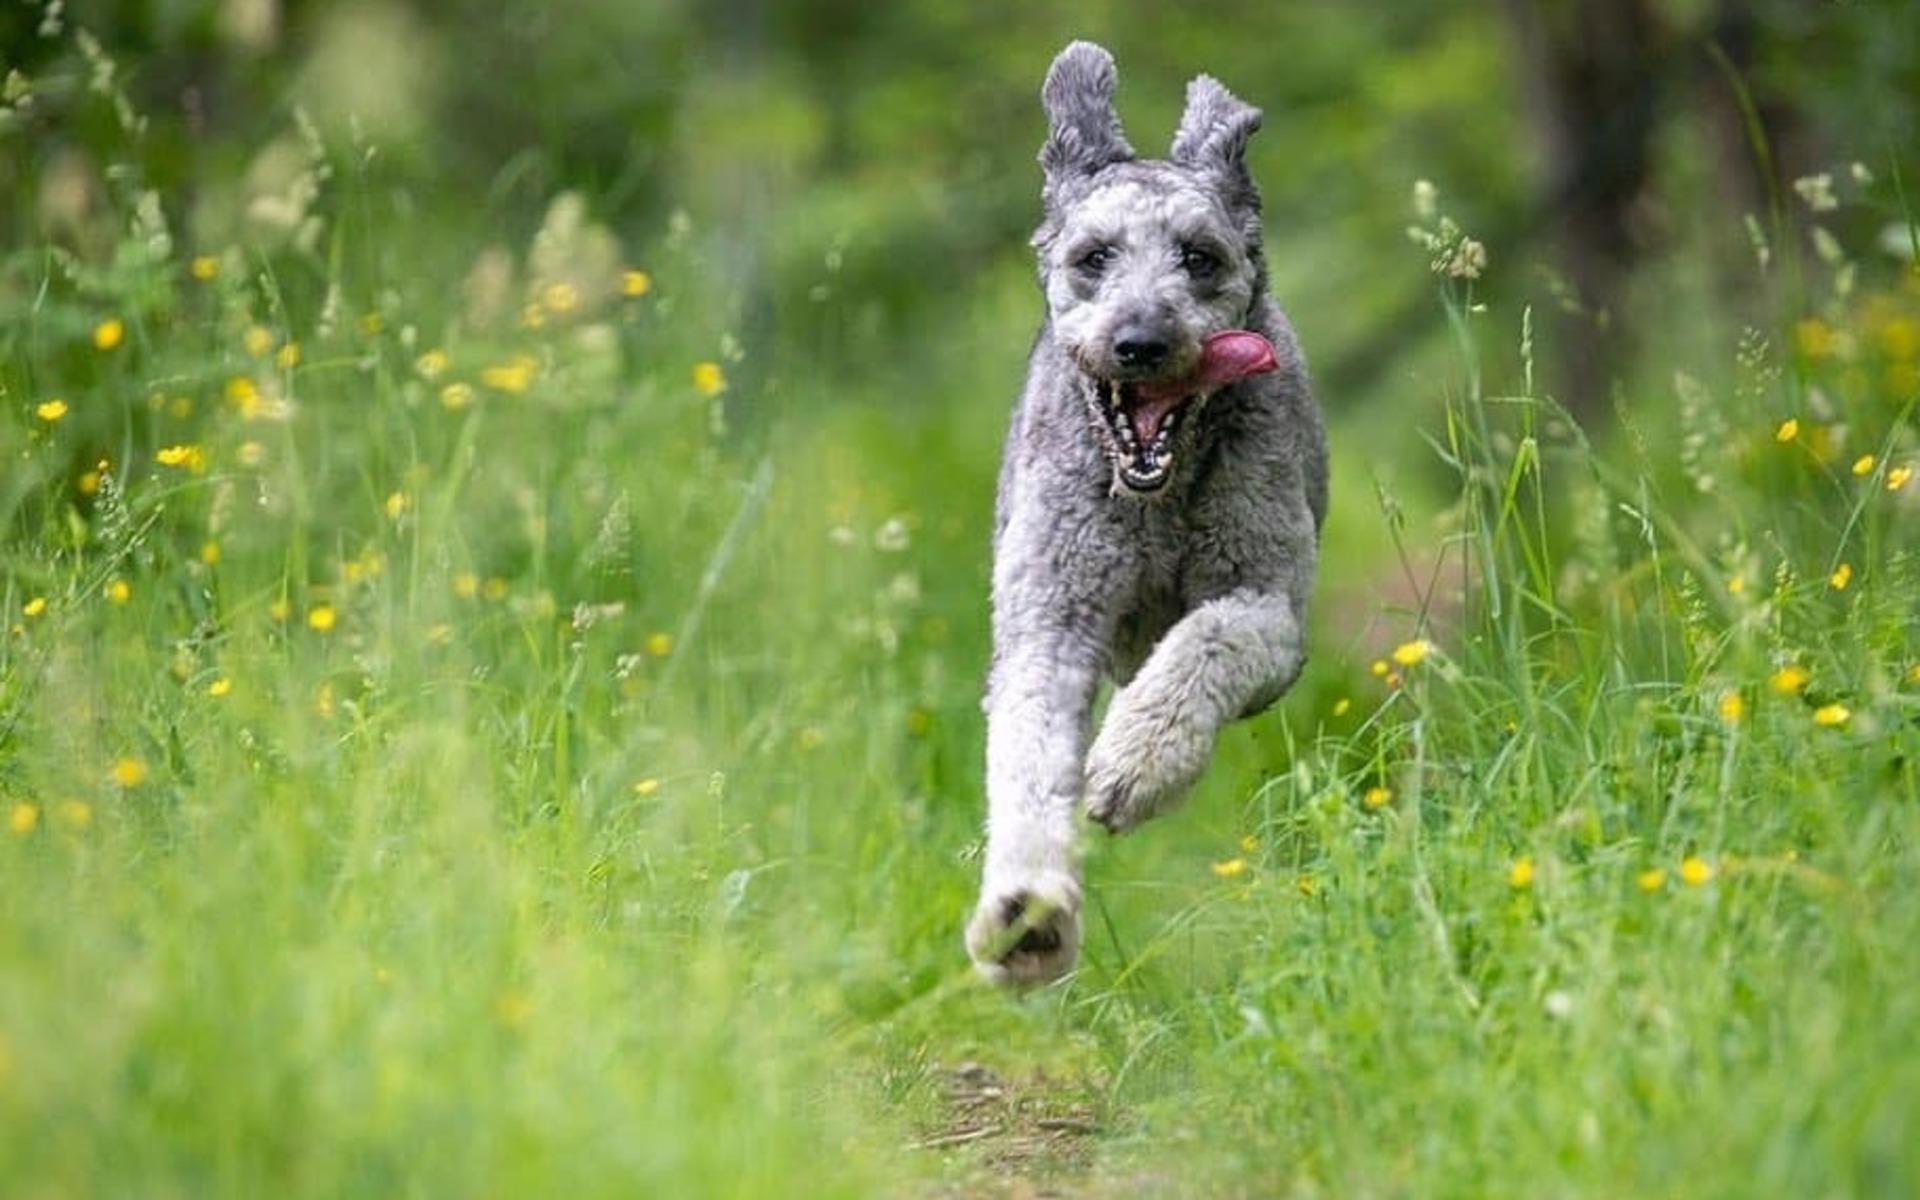 ”Här kommer Ozzy 16 månader. Ozzy är en Aussiedoodle. Full fart i skogen är det bästa som finns när husse gömt sig bakom en stor gran”, skriver Lasse Edwartz.